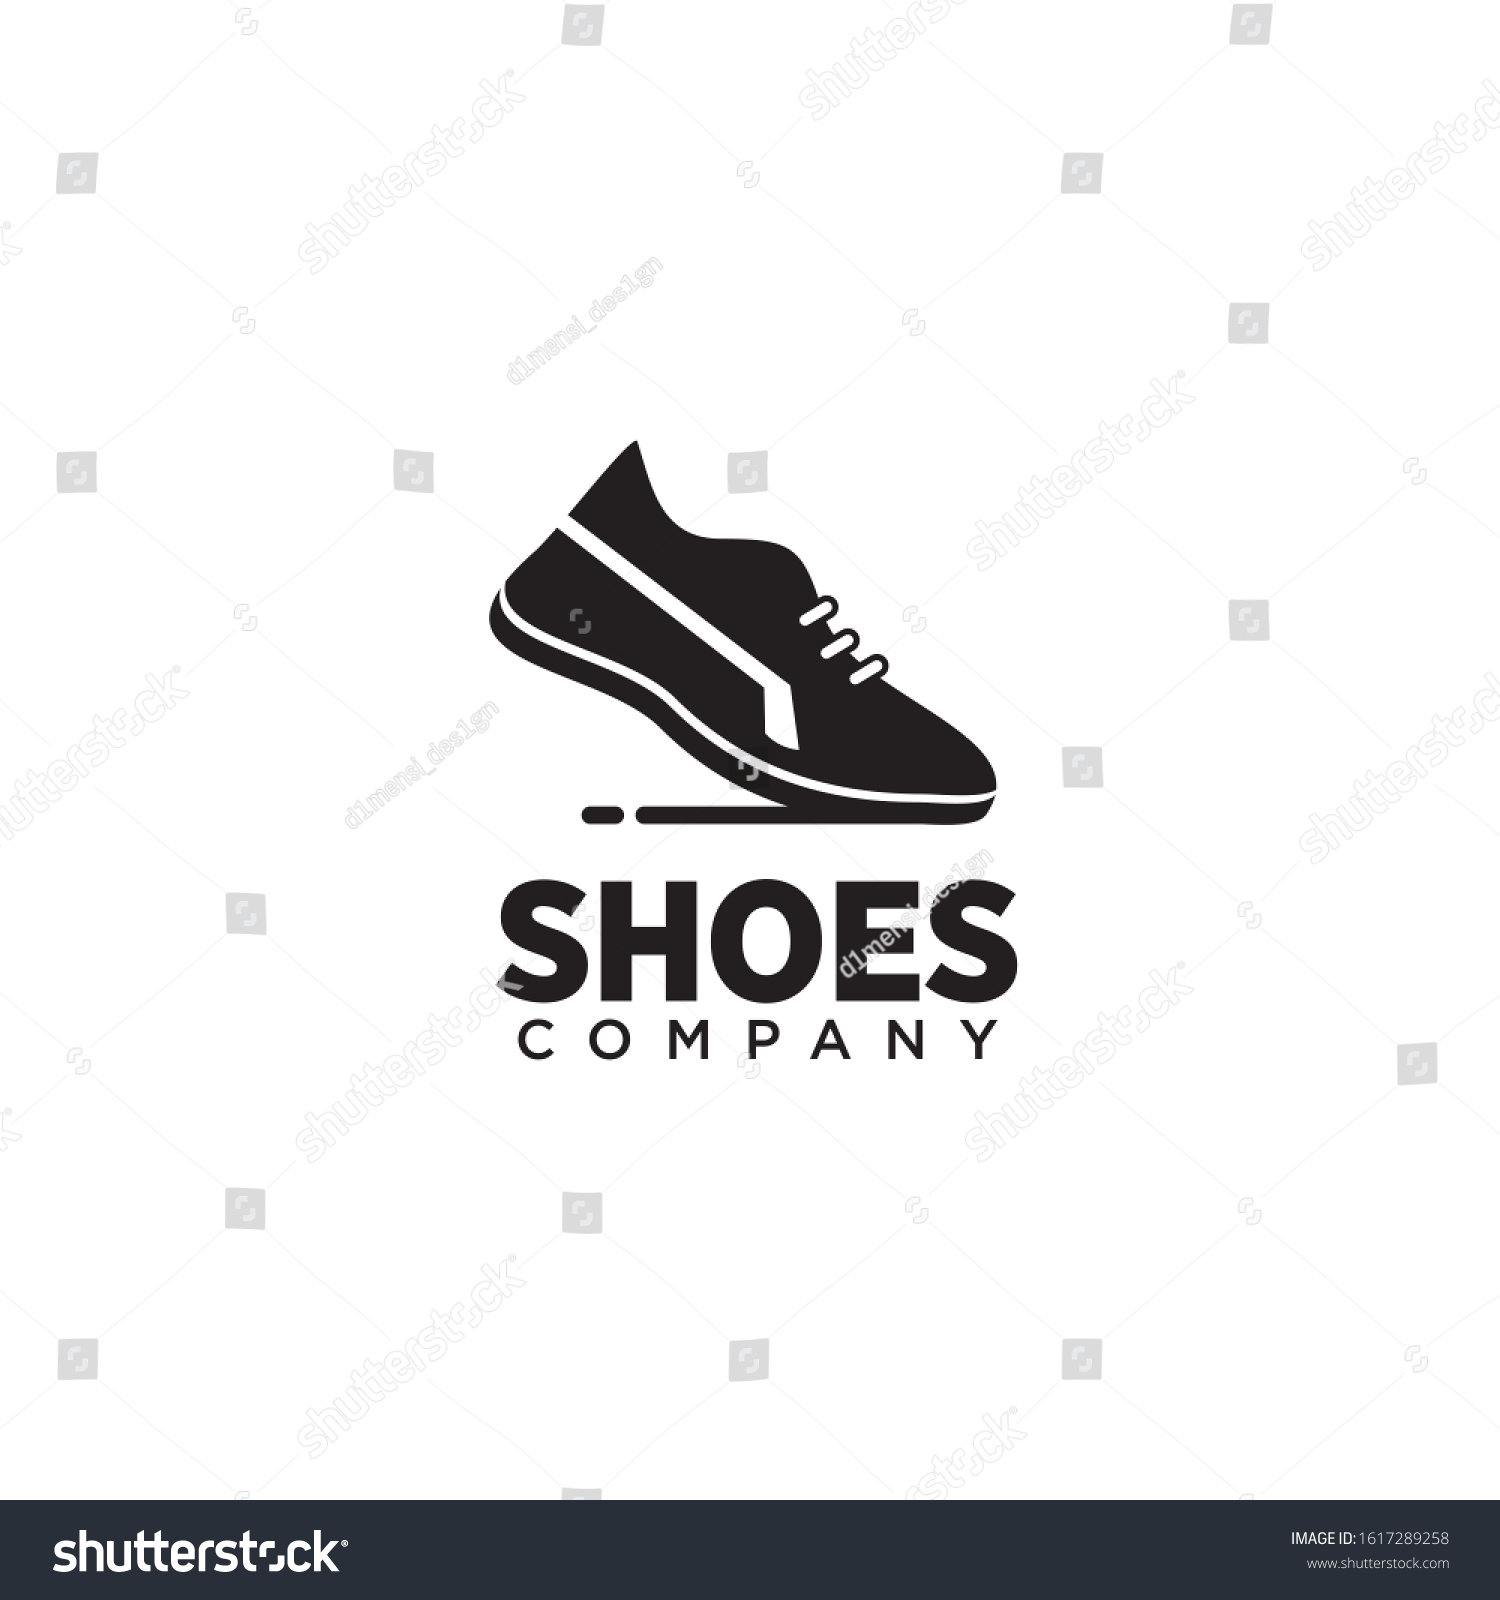 59,721 Footwear logo design Images, Stock Photos & Vectors | Shutterstock